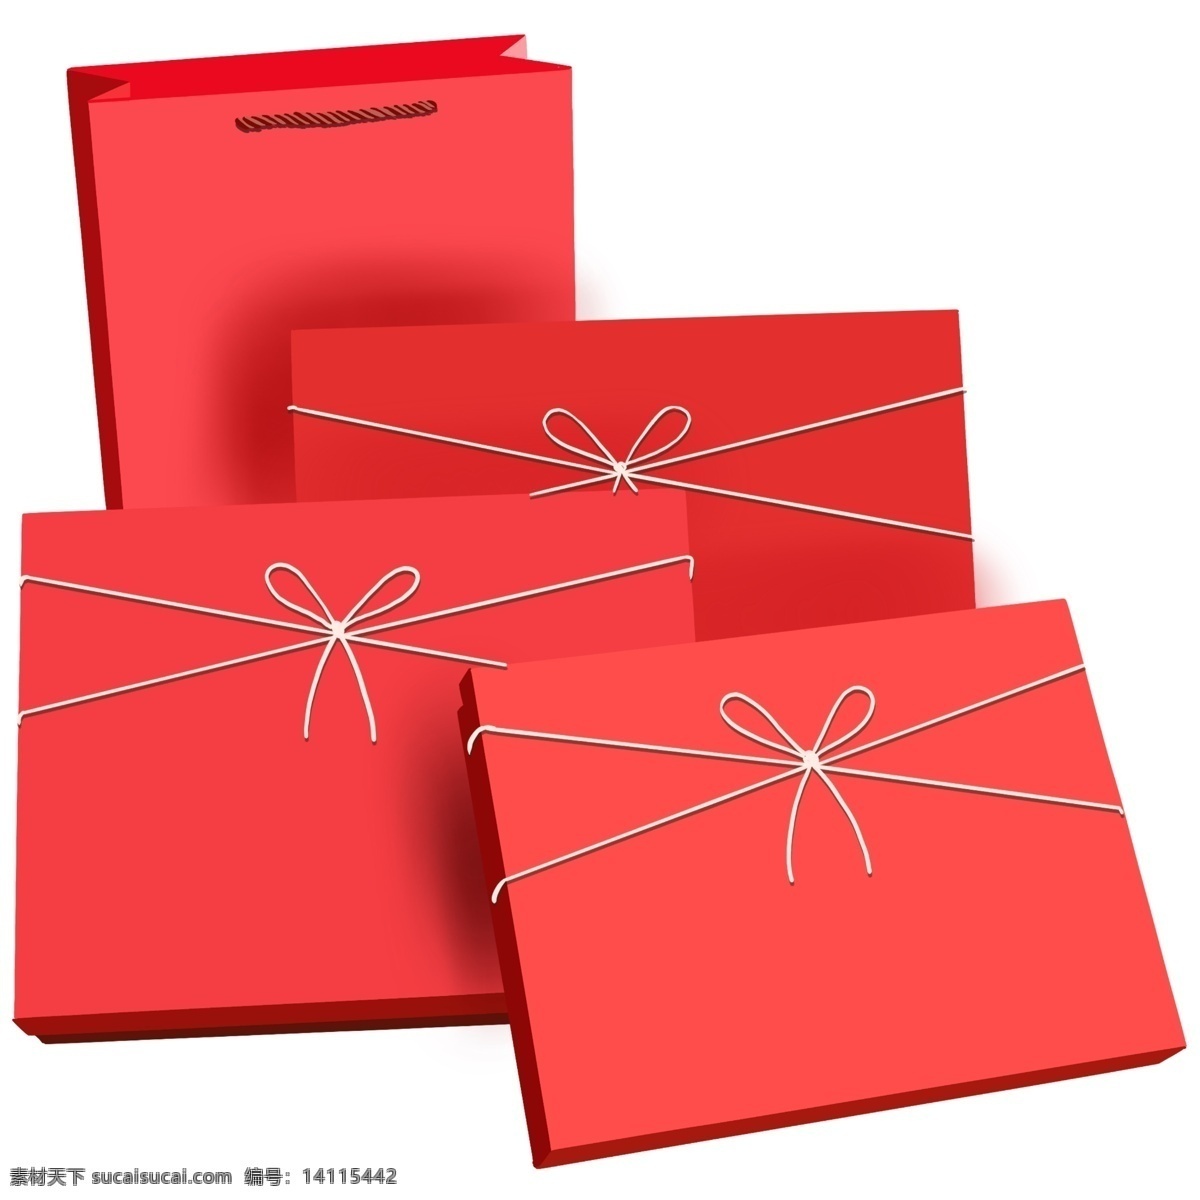 三个 红色 礼品 盒子 纸盒 方形 方盒 纸袋 手提袋 购物袋 礼品袋 礼物 蝴蝶结 绳子 颜值 精致 送礼